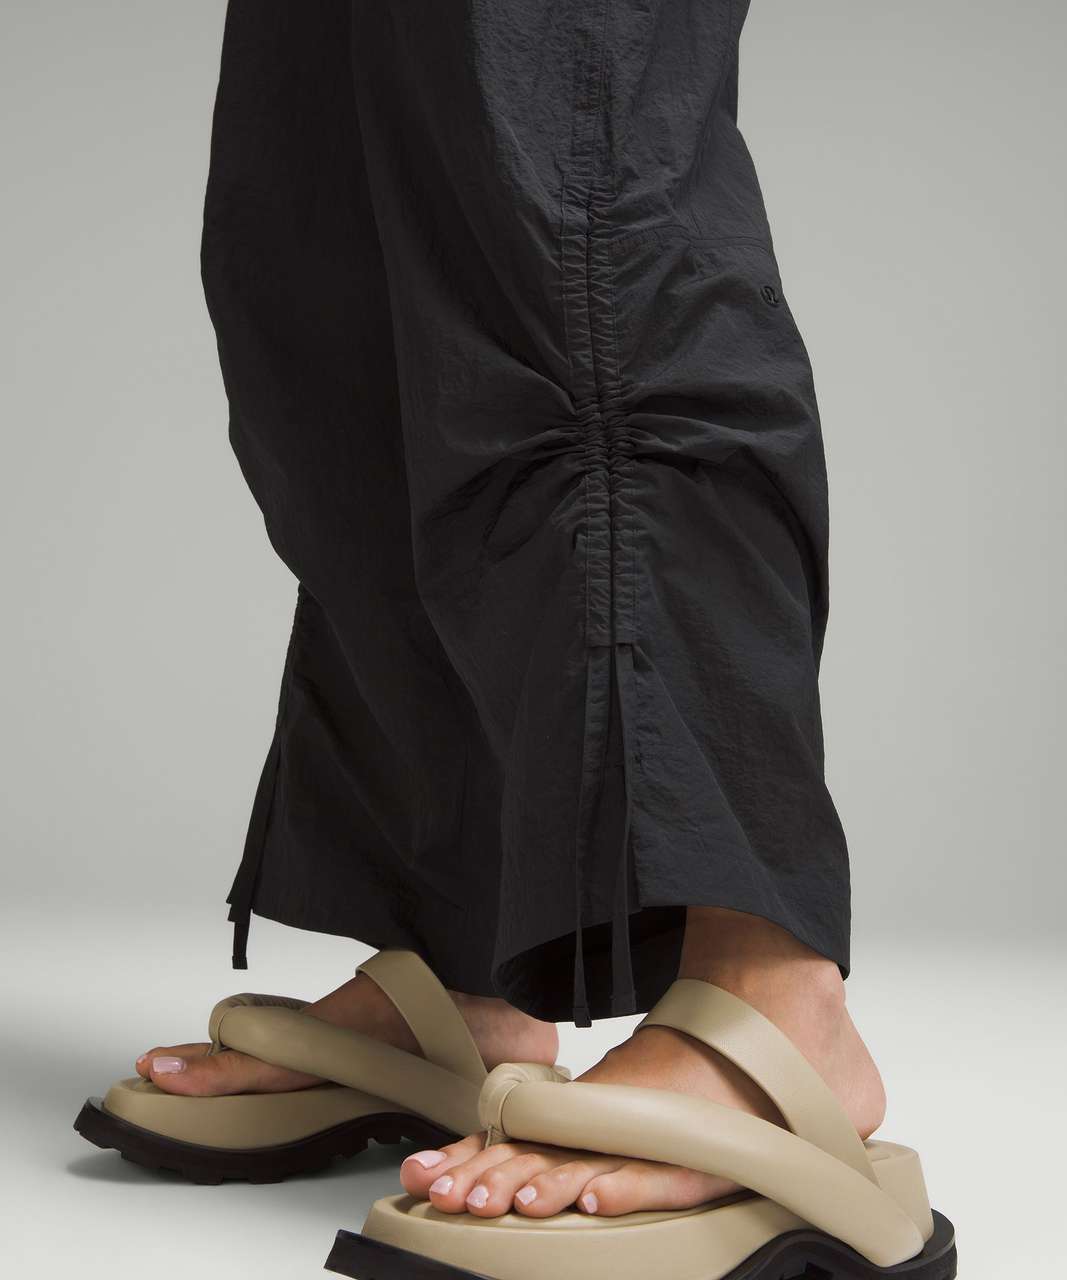 lululemon athletica, Pants & Jumpsuits, Blacklululemon Noir Pant Size 4